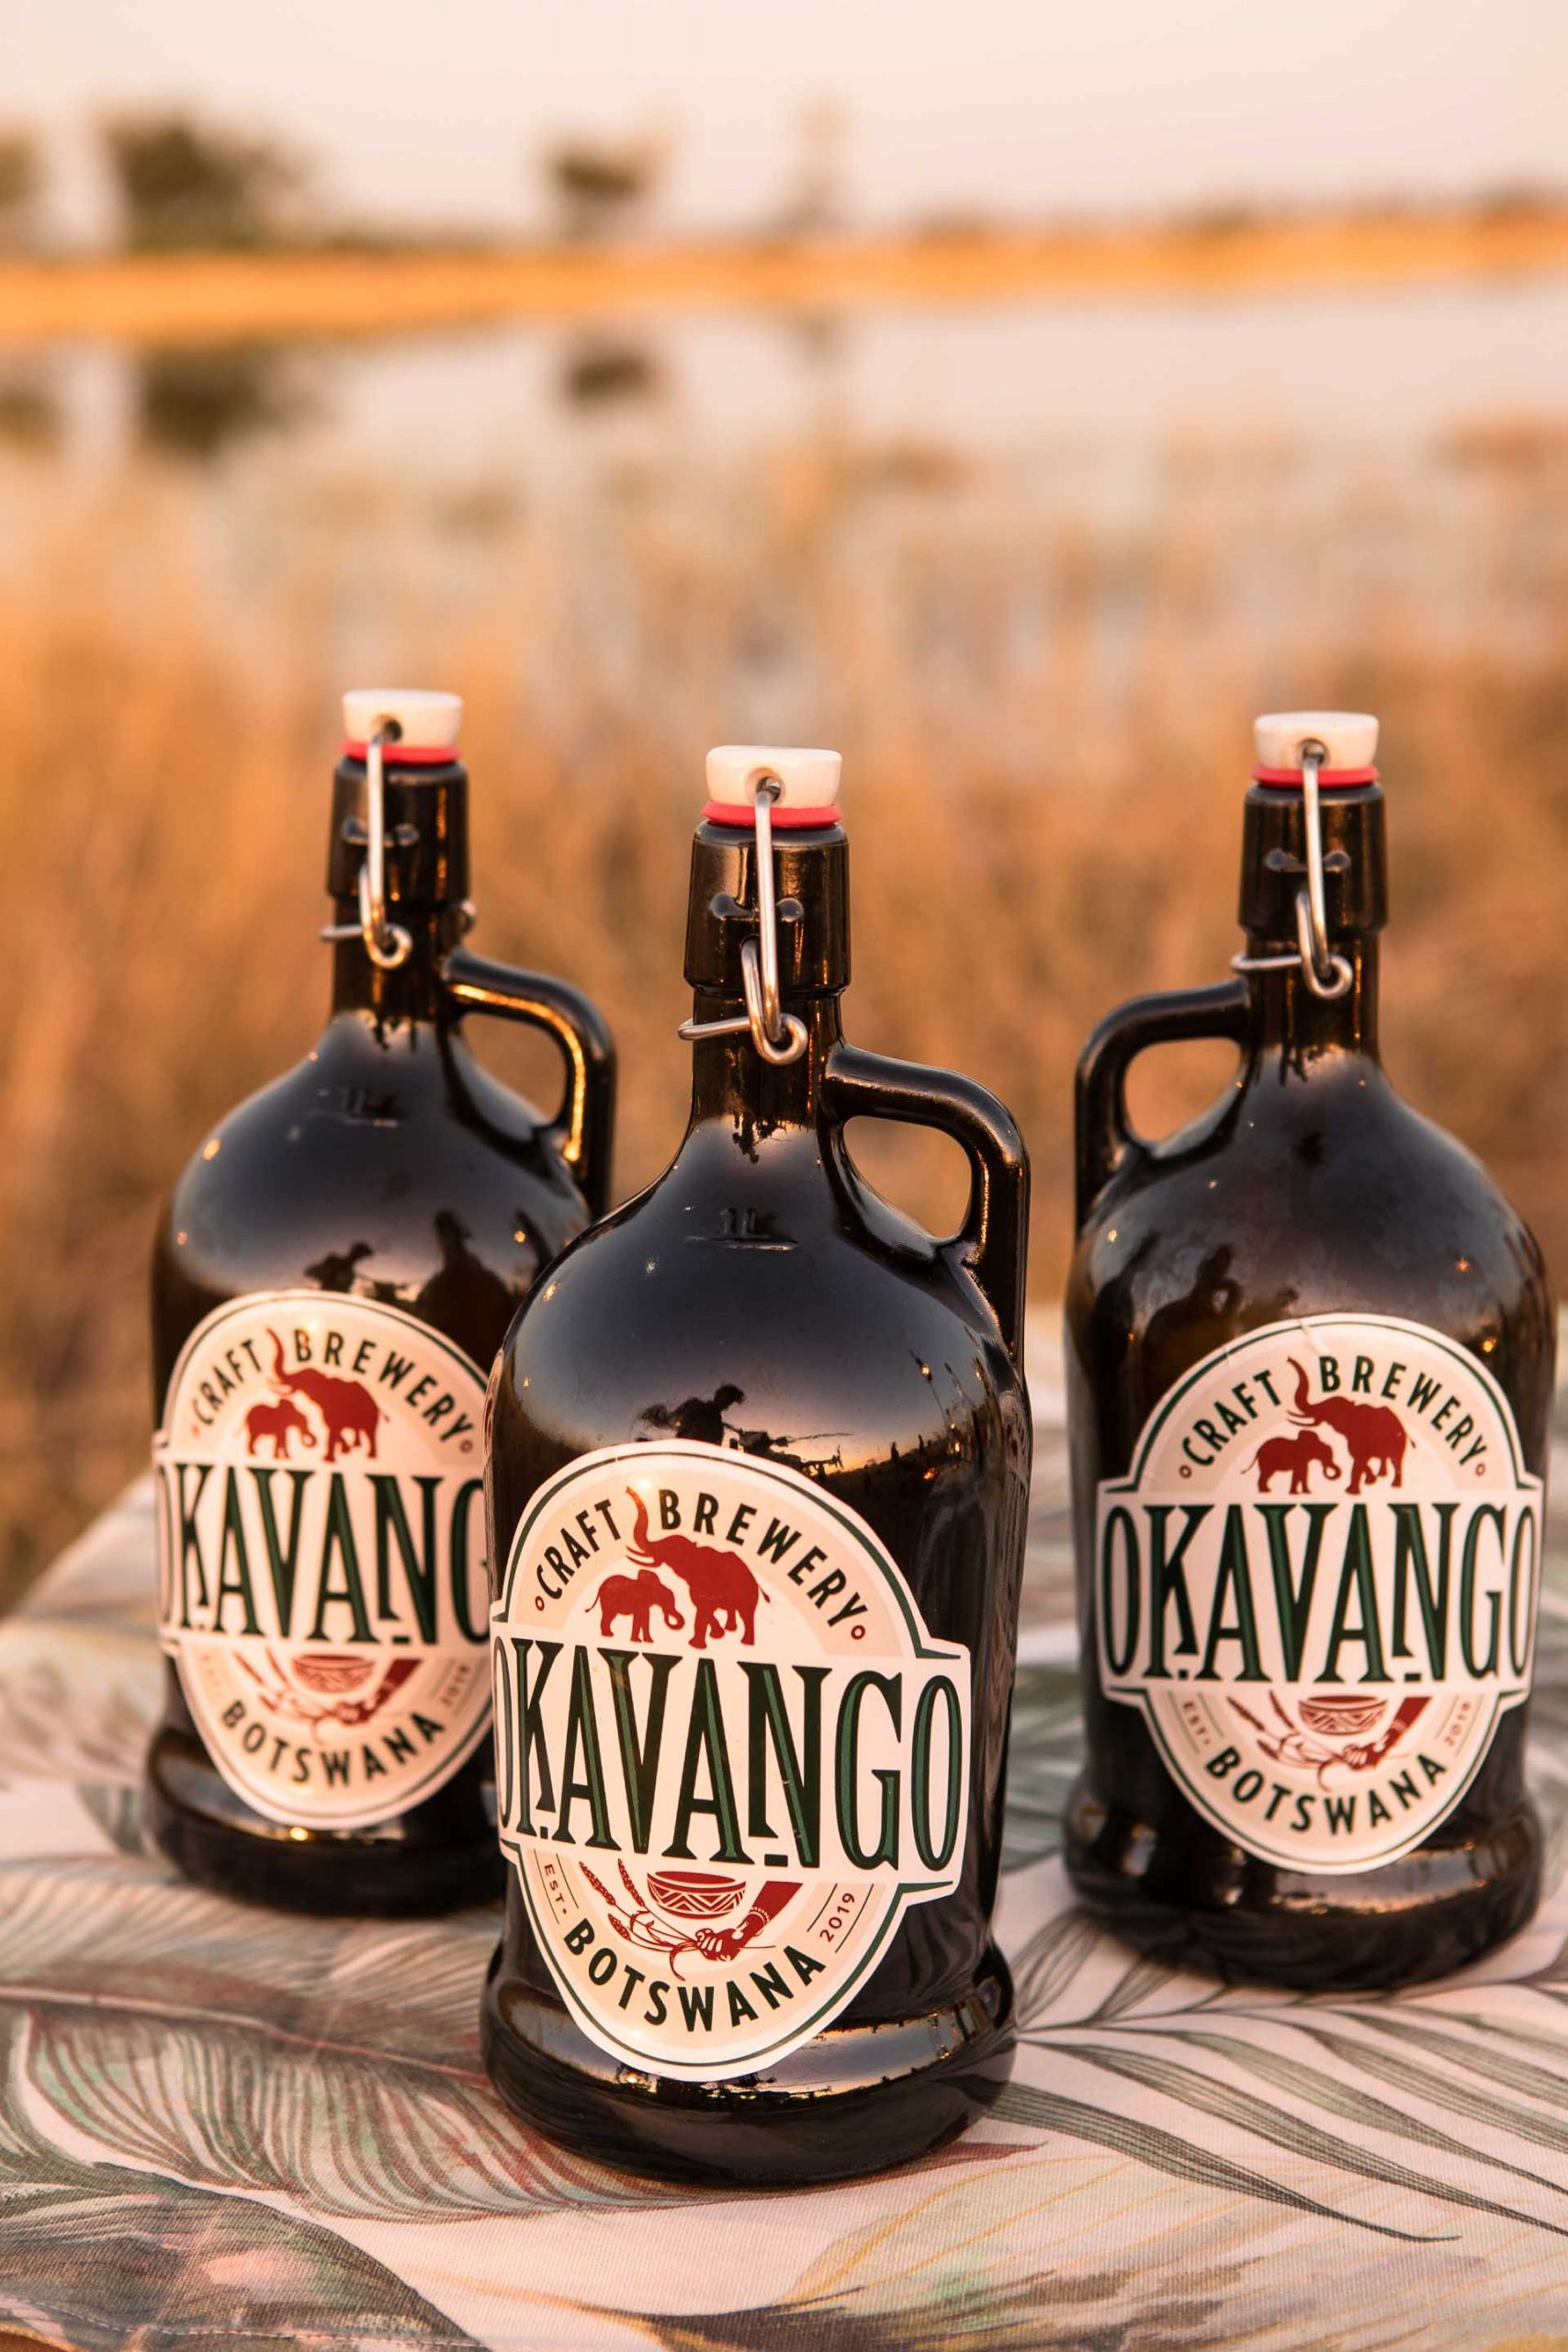 Okavango craft beer